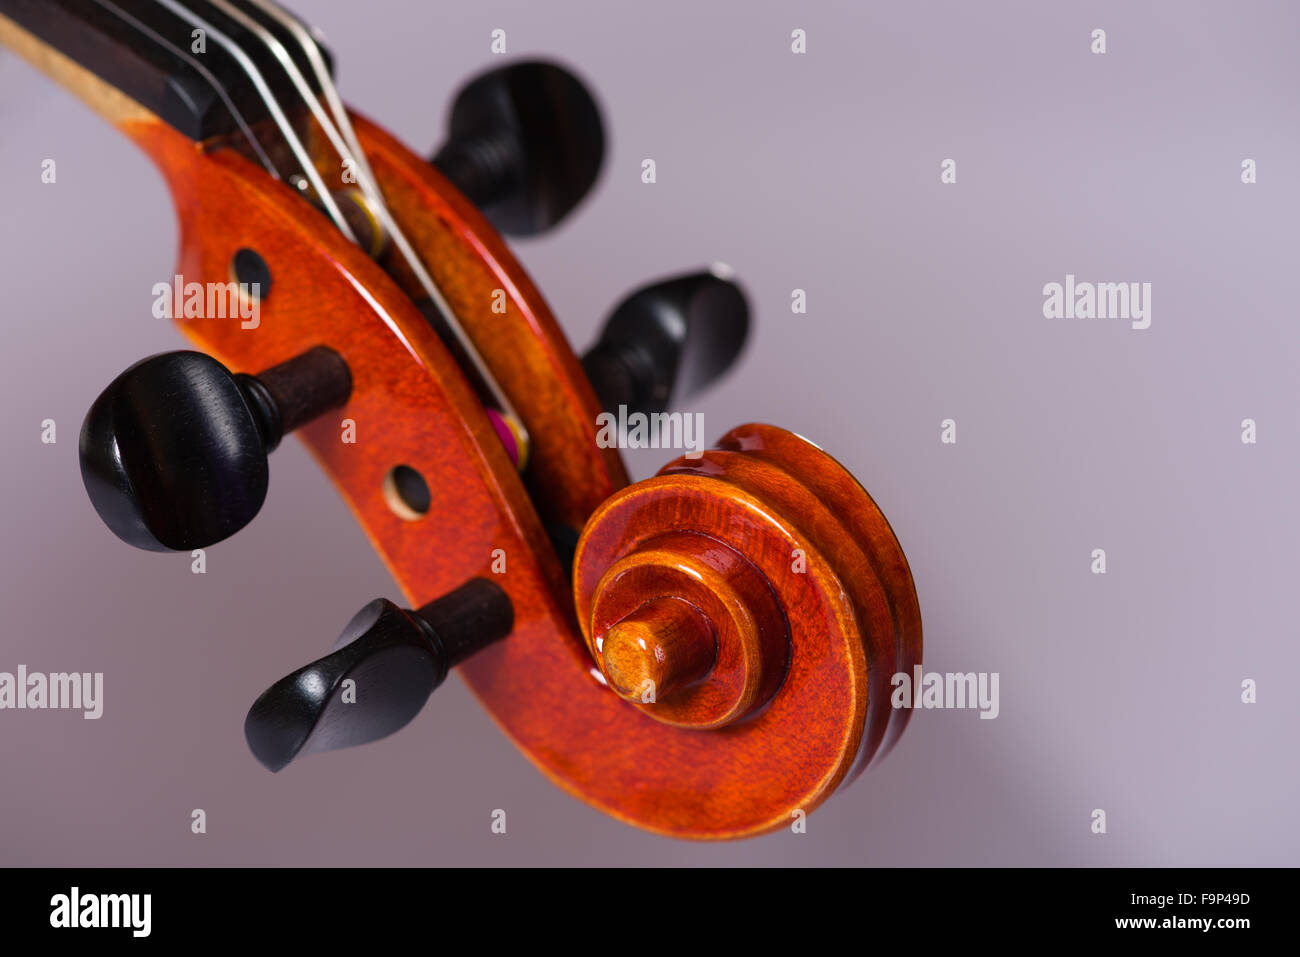 Un gros plan des détails d'un violon. Banque D'Images